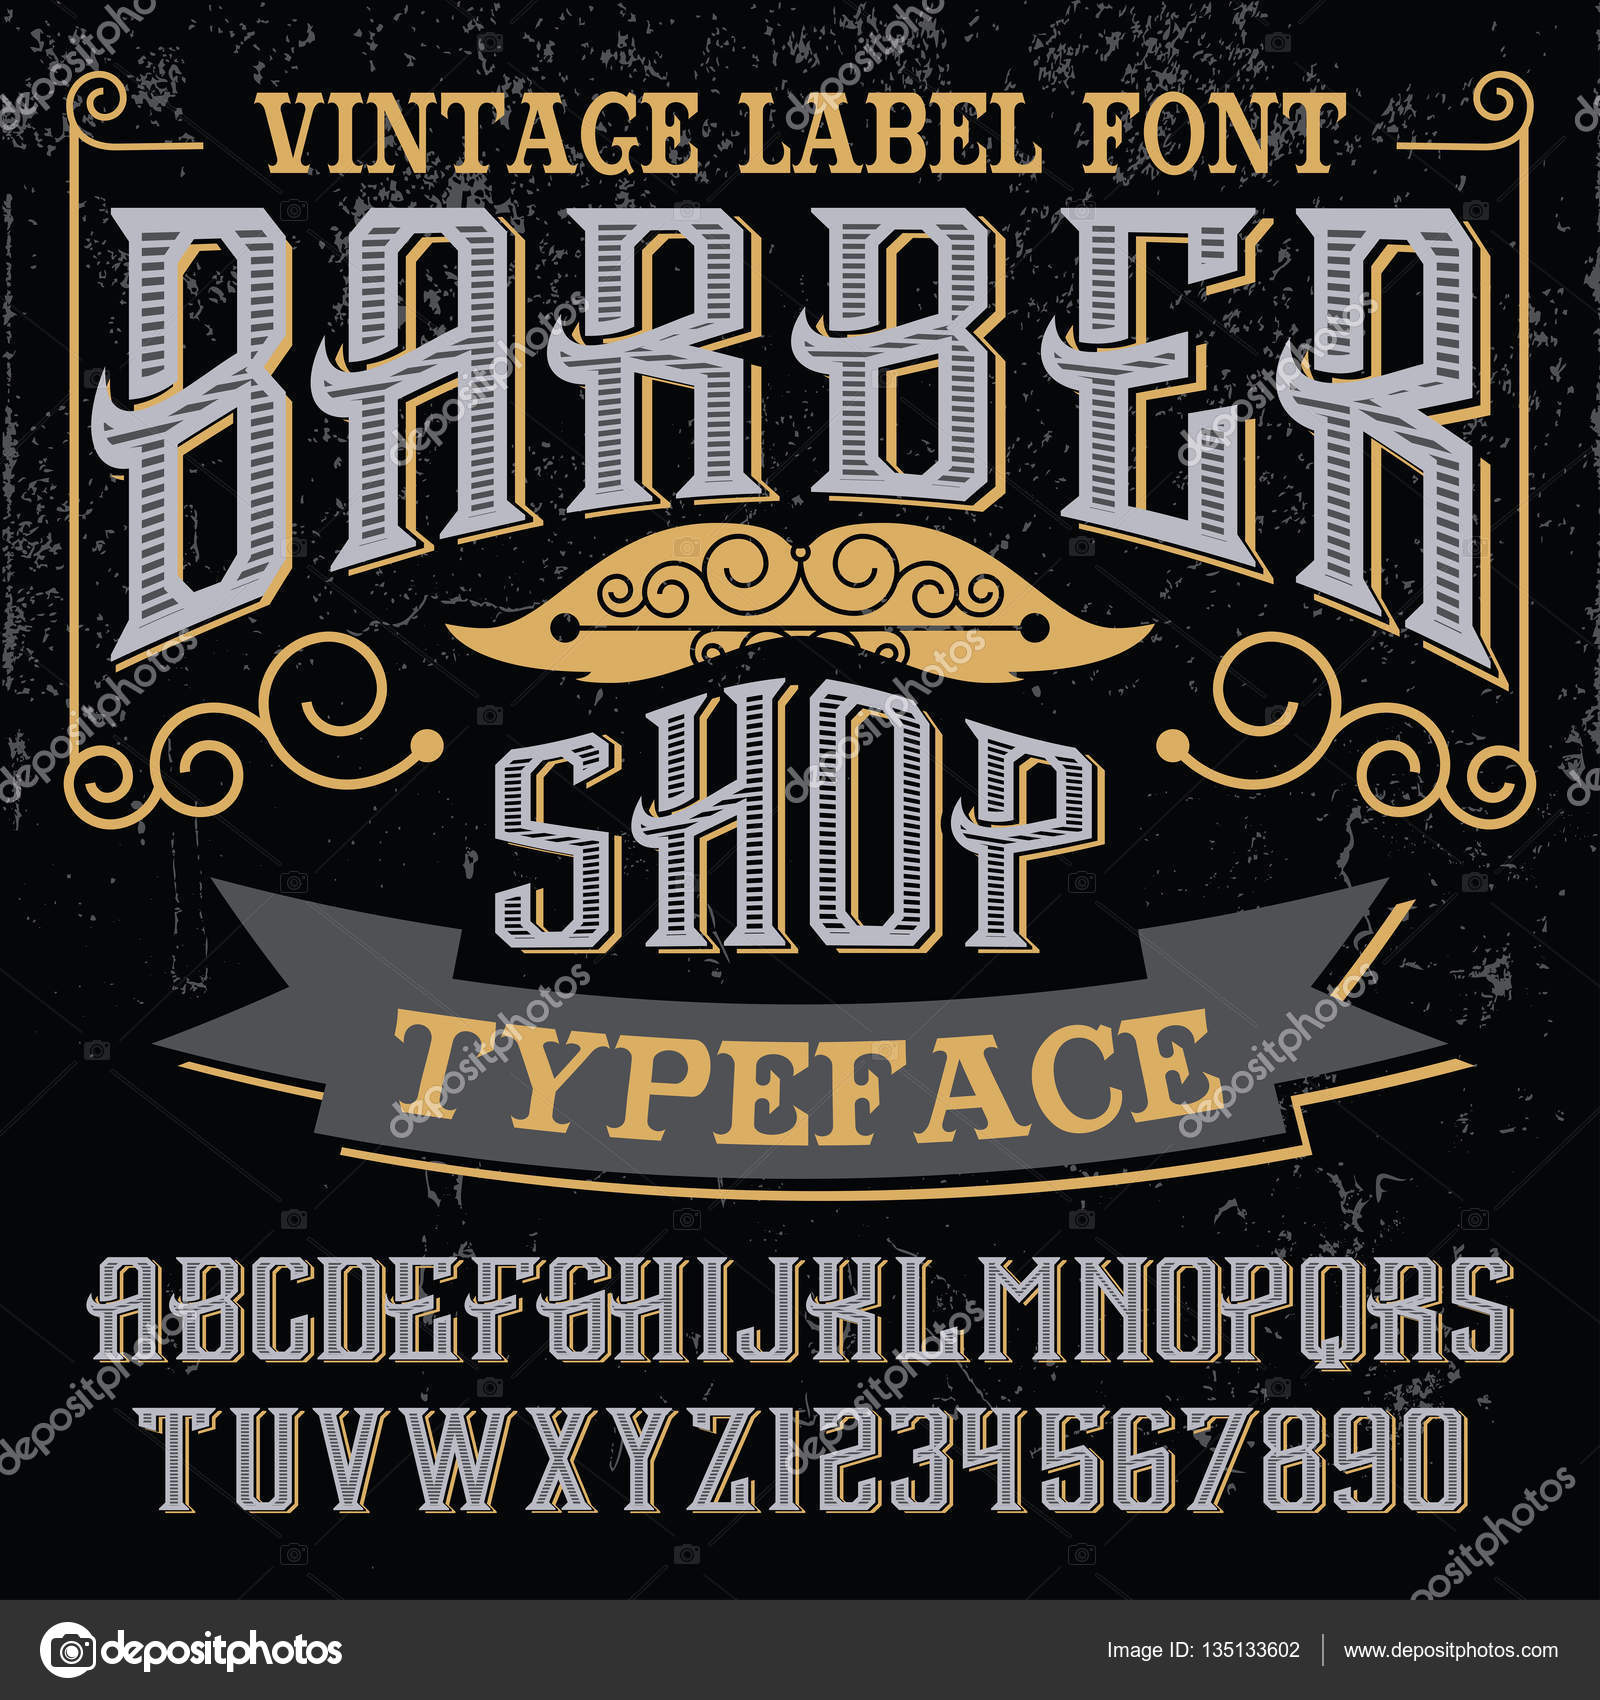 Barber shop Font : Download Free for Desktop & Webfont